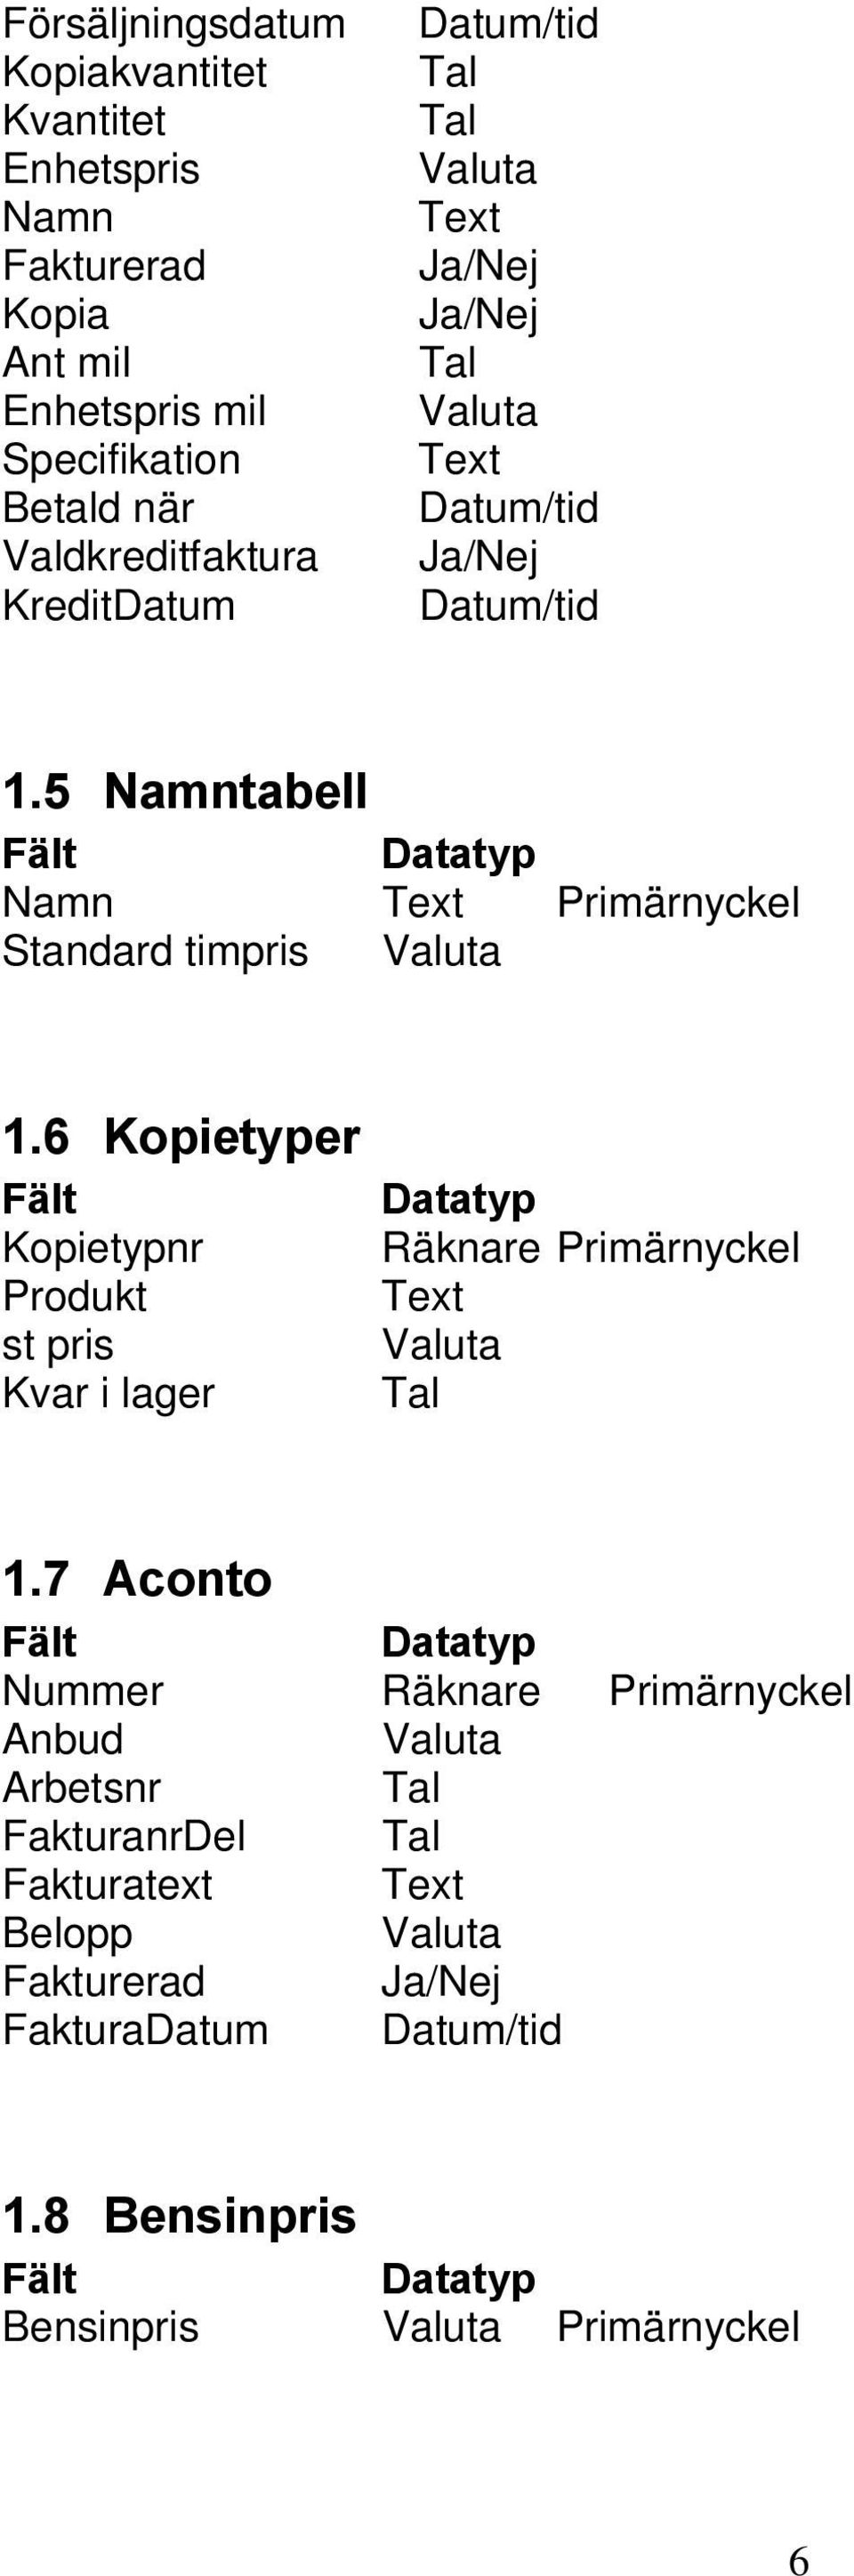 5 Namntabell Fält Datatyp Namn Text Primärnyckel Standard timpris Valuta 1.